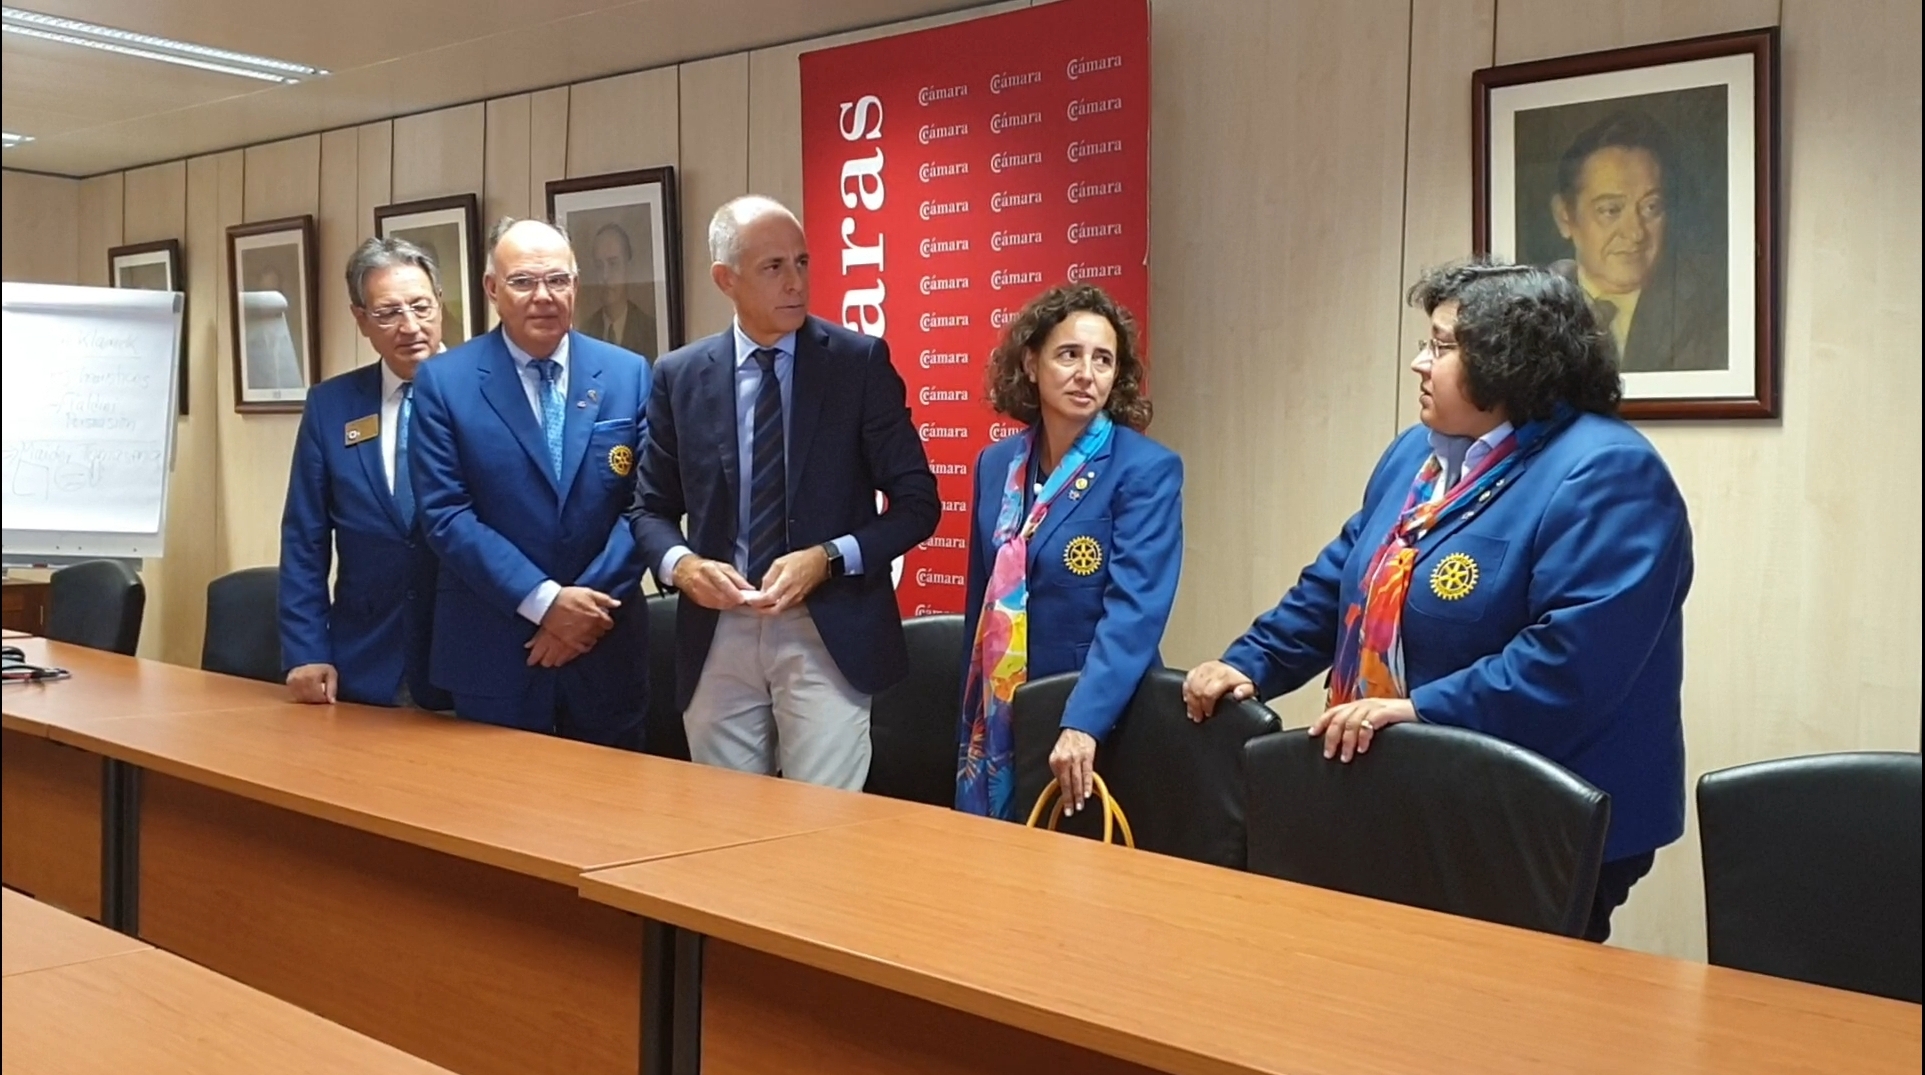 Los gobernadores de los distritos españoles y uno portugués, junto con los presidentes de clubes de Tenerife se reúnen con el presidente de la Cámara de Comercio de Tenerife.